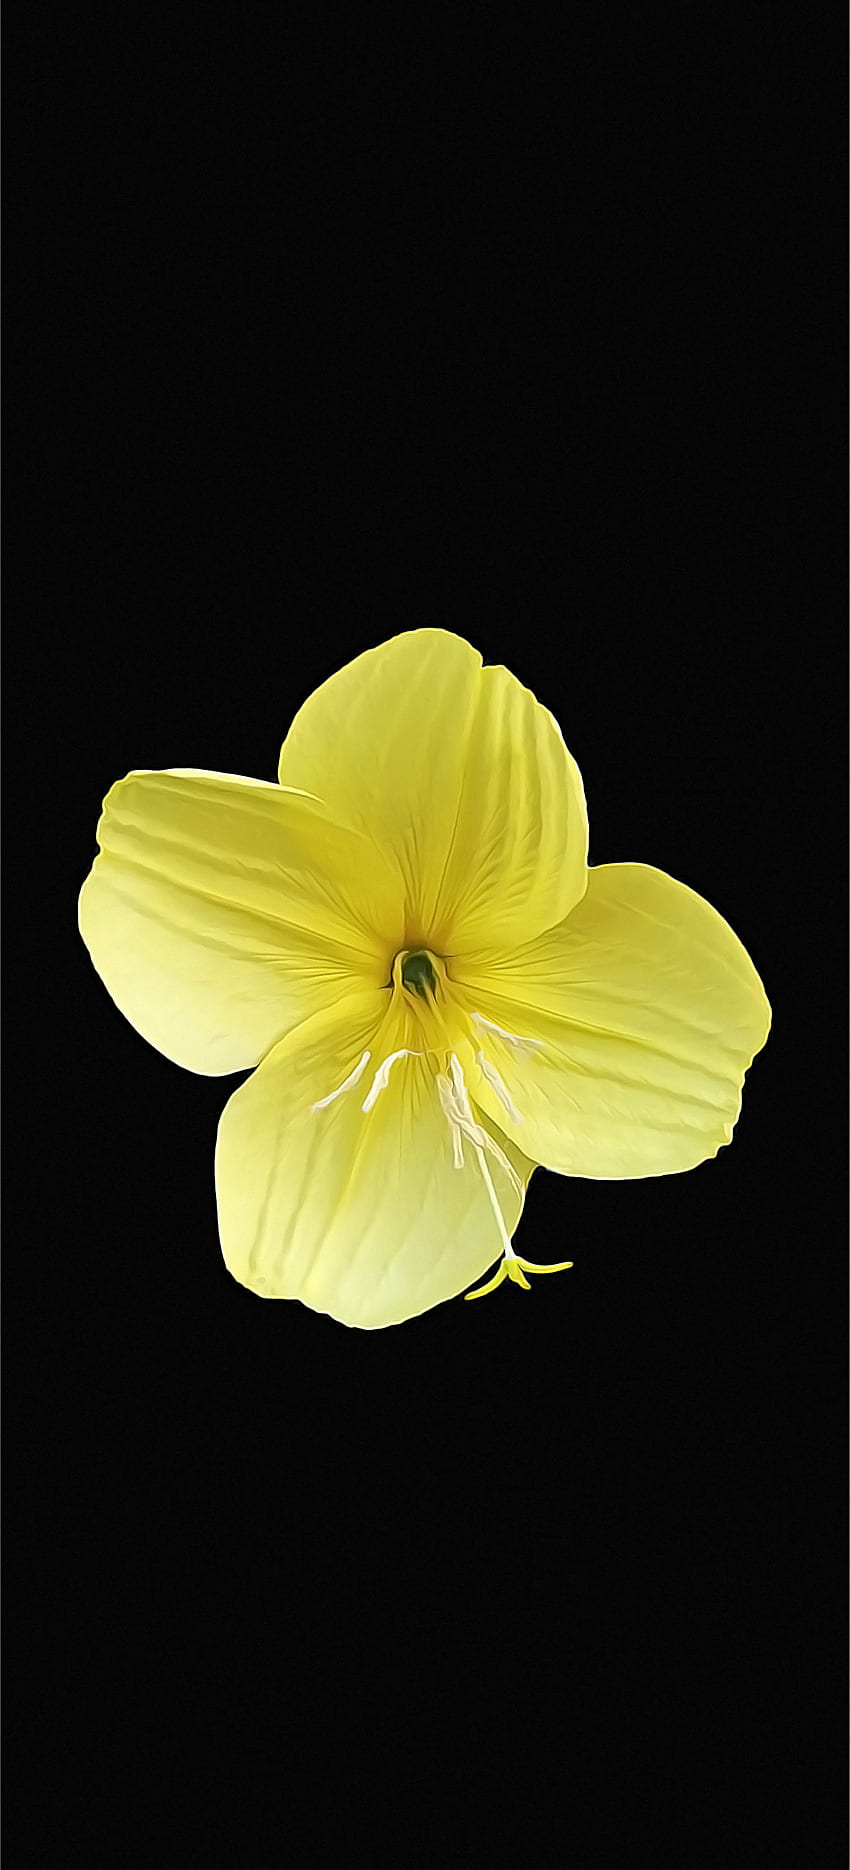 flower, amoled, amoledflower, yellow and black, flower amoled, yellowflower, black, yellow HD phone wallpaper